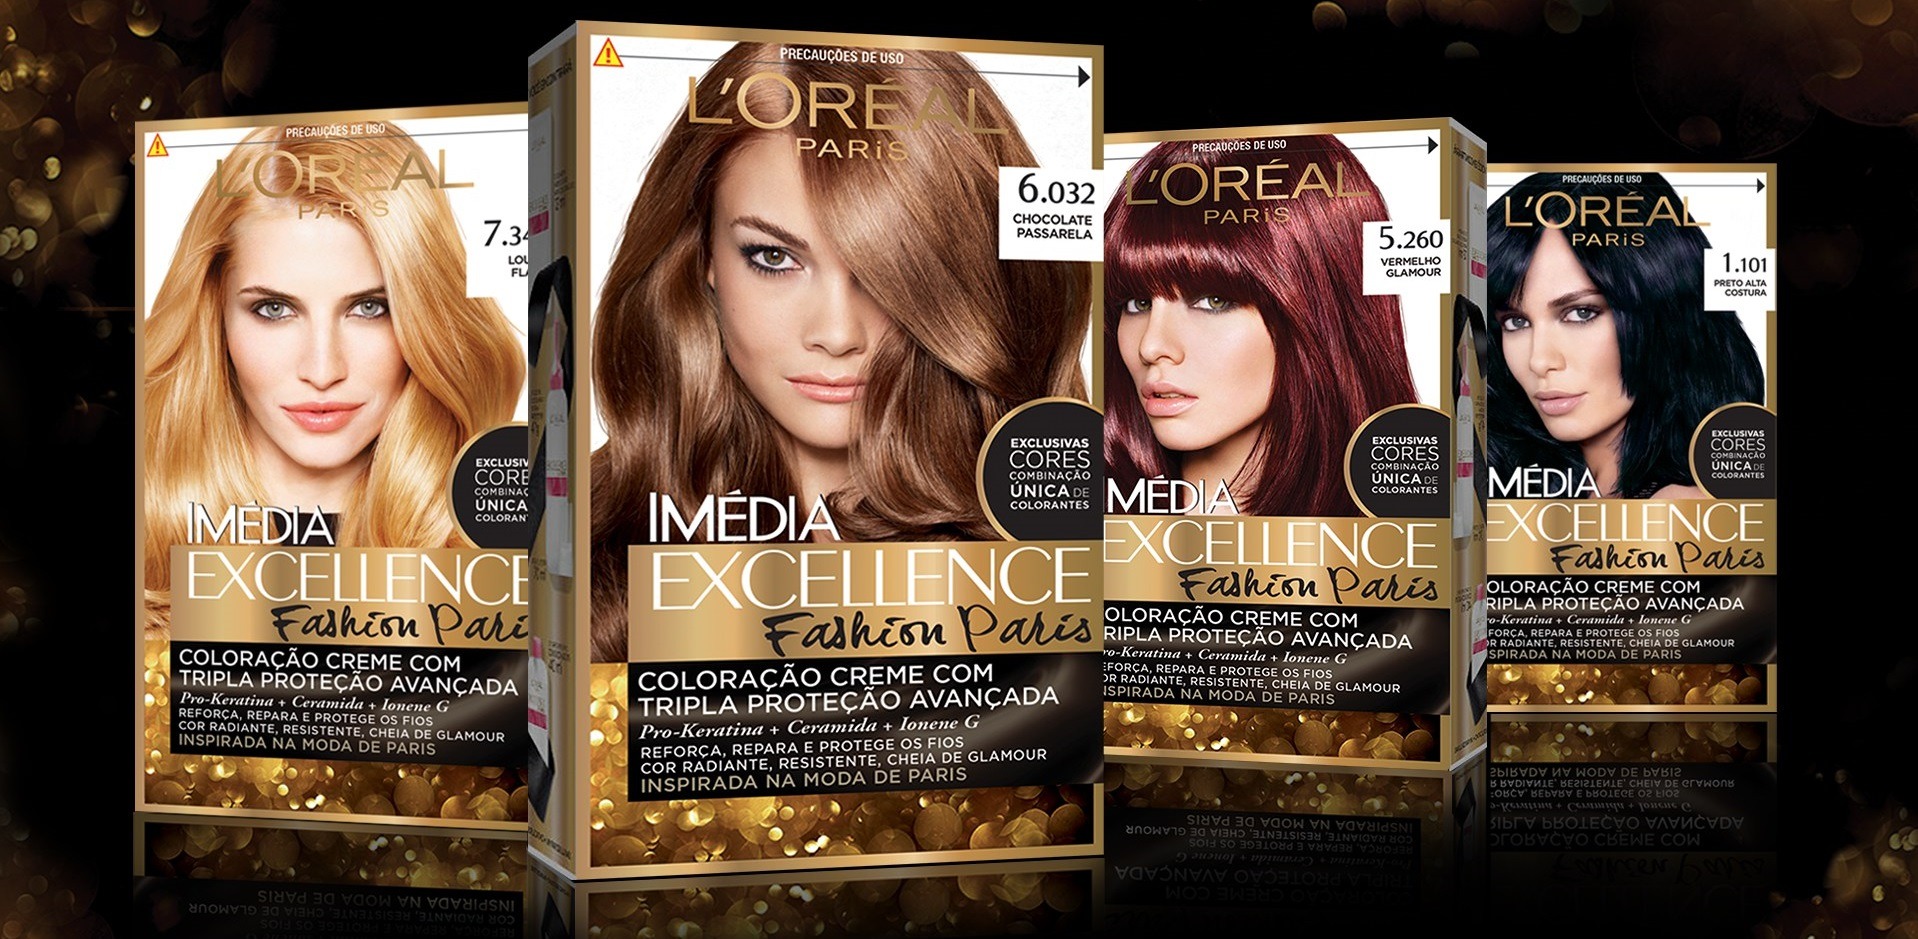 کیت رنگ مو لورآل مدل Excellence شماره 03